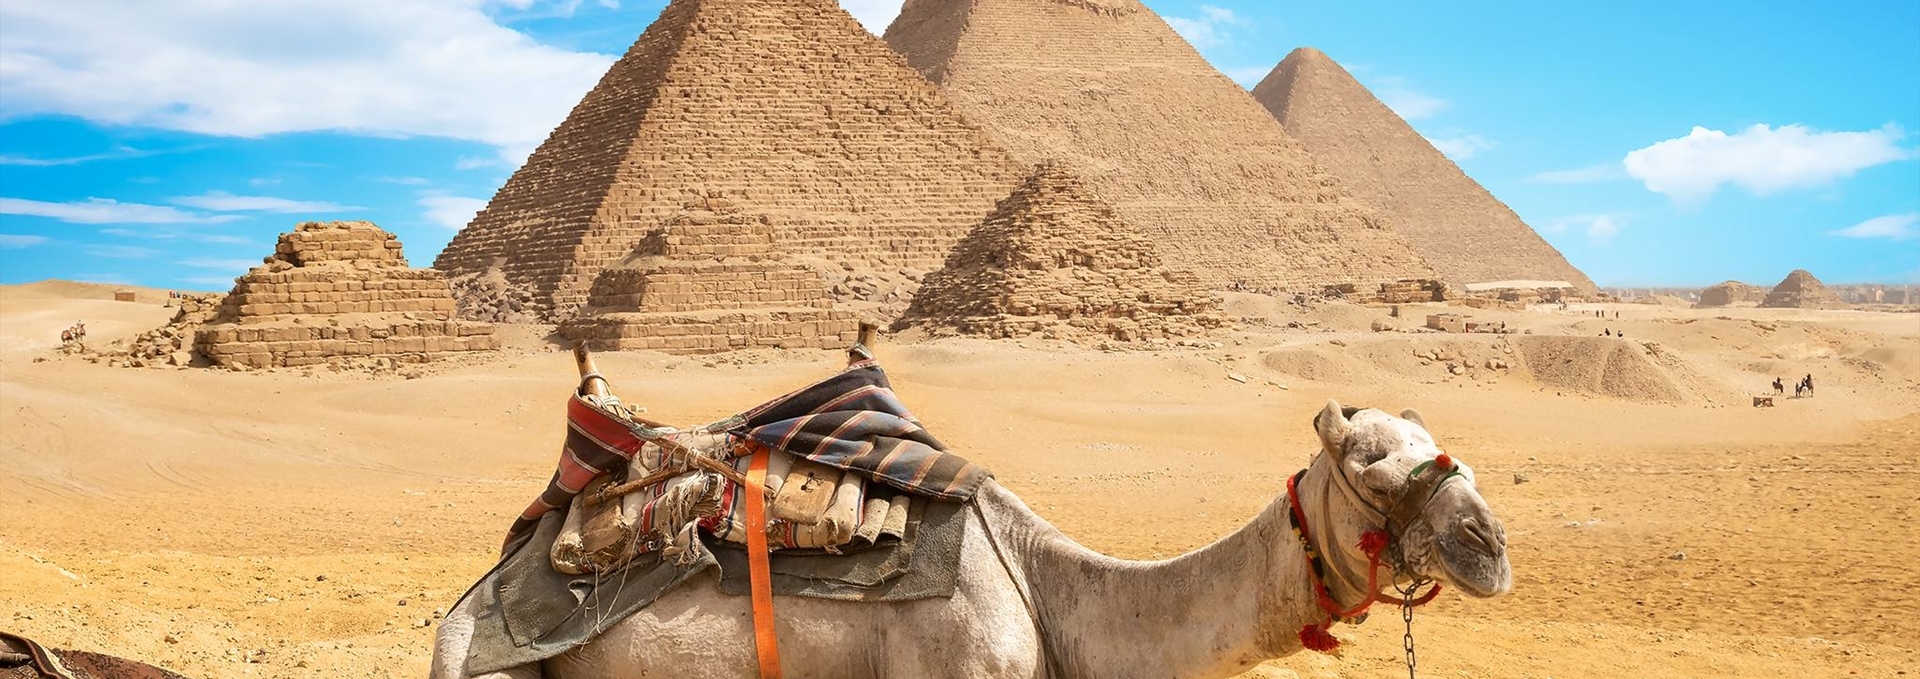 Εξωτικά ταξίδια στην Αίγυπτο